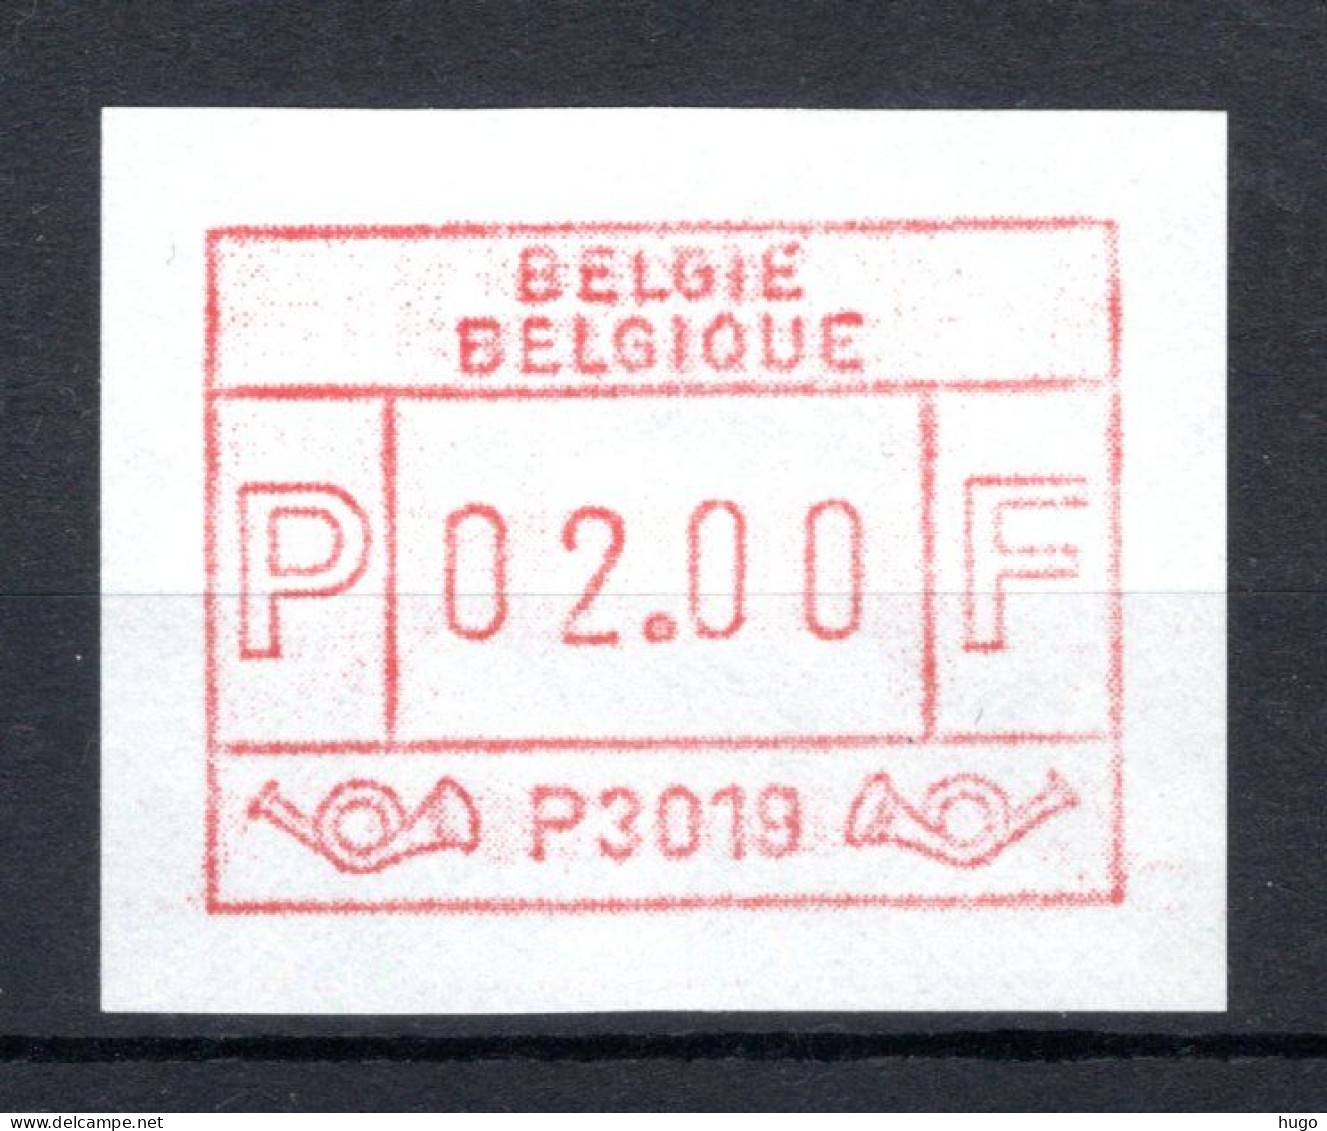 ATM 19 MNH** 1983 Type I - Lokeren 1 - Postfris